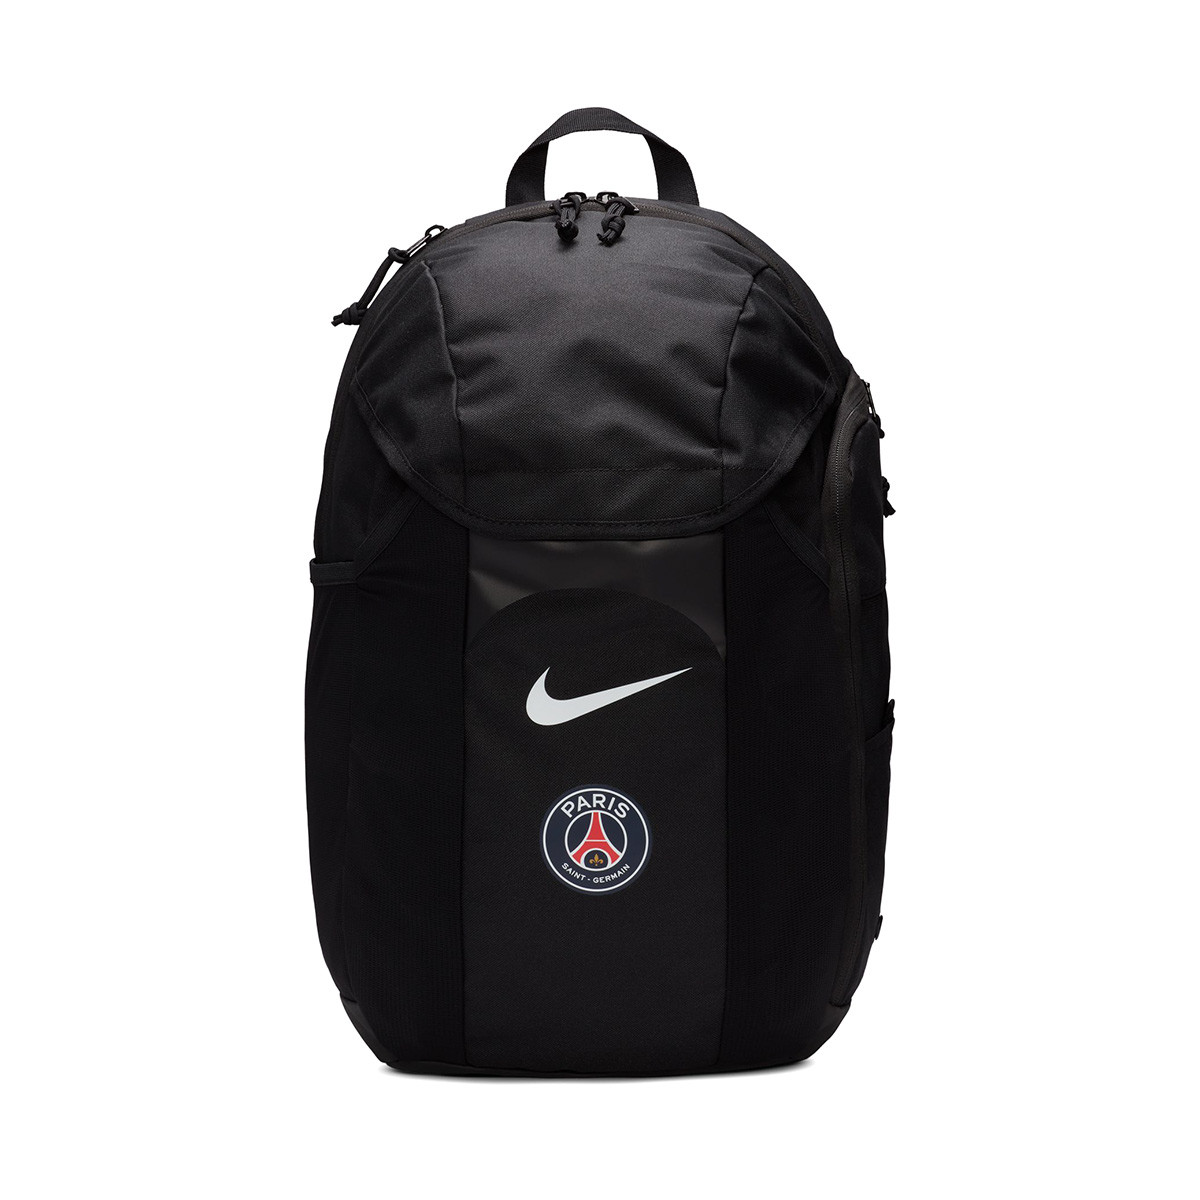 Nike Paris Saint-Germain FC - PSG batoh / ruksak čierny